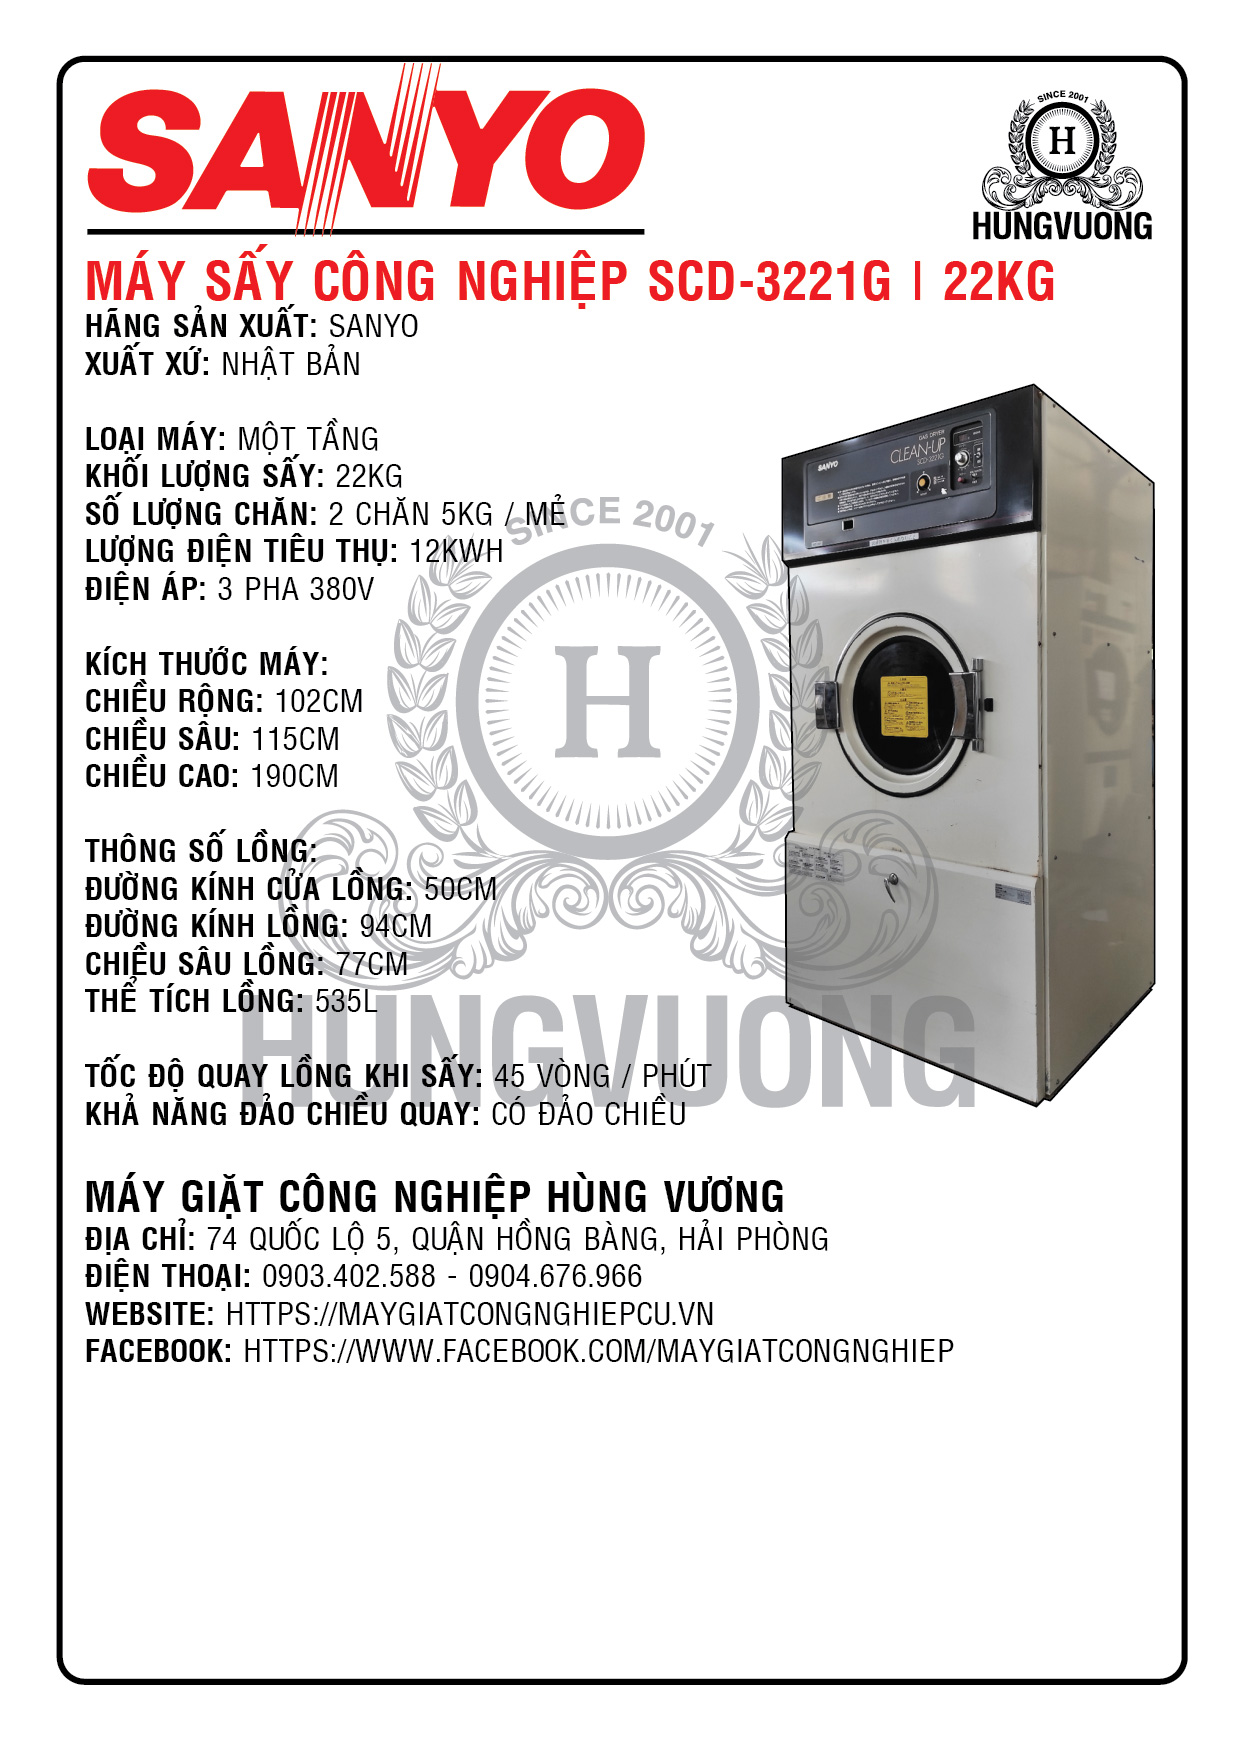 Thông số kỹ thuật máy sấy công nghiệp SANYO SCD-3221G, 22kg, 1 tầng, đảo chiều, Nhật Bản